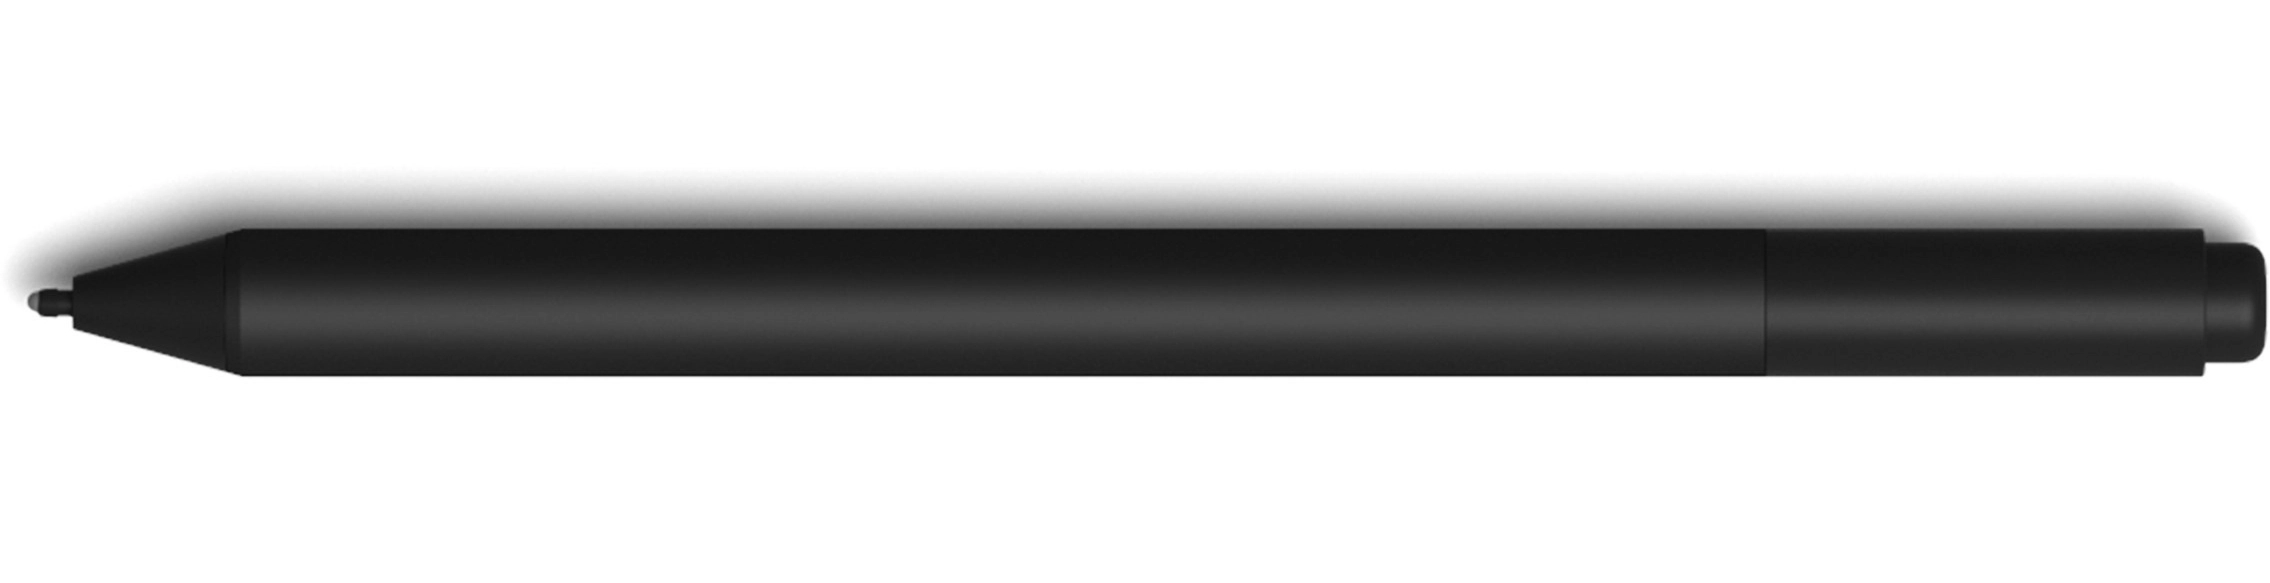 Microsoft Surface Pen Eingabestift Schwarz 20 g